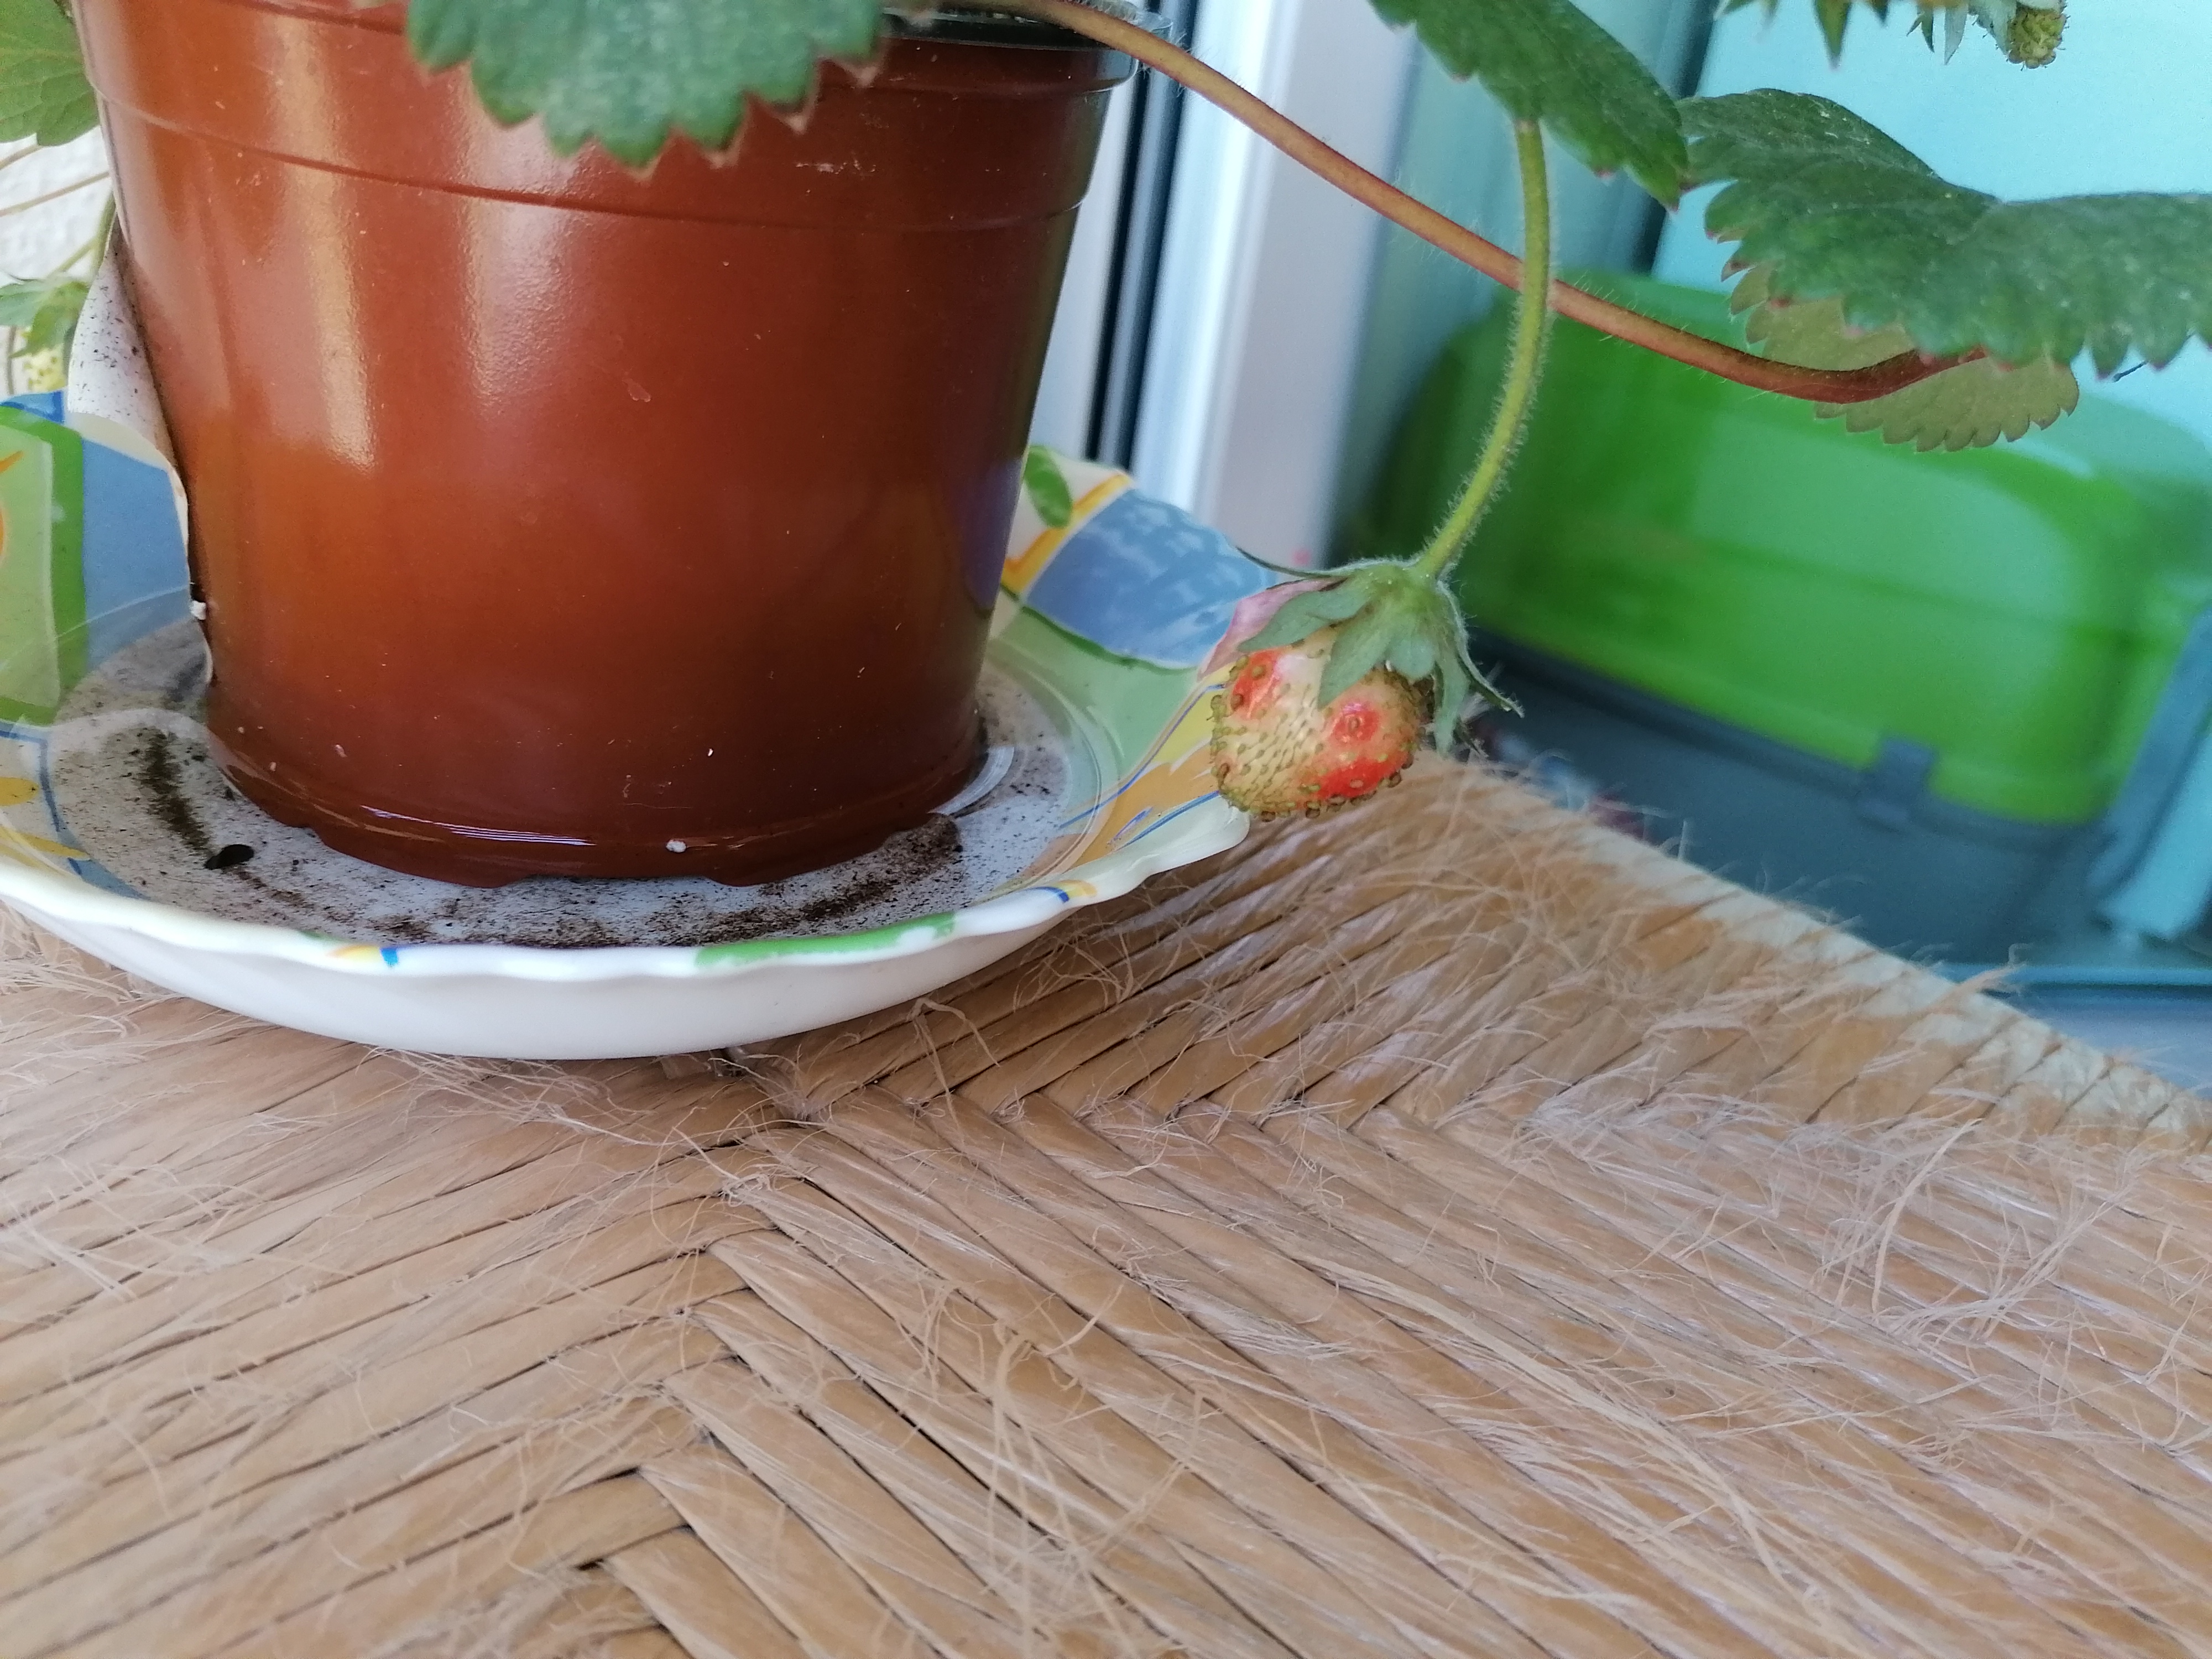 Evolução de sementes alpista semeadas num copo em algodão.
Evolução do crescimento de um morangueiro na minha varanda.